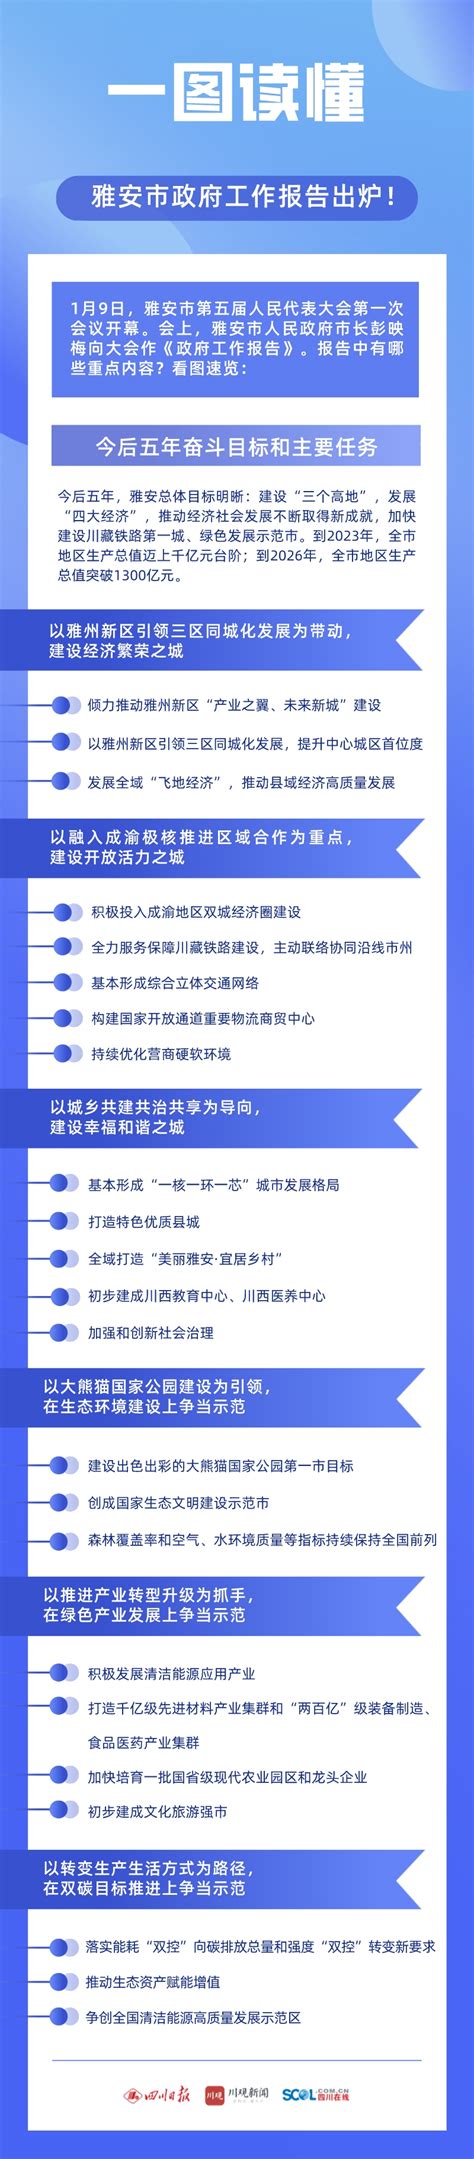 雅安建置沿革名称来历及主要特色_四川文化网—四川文化网门户网站